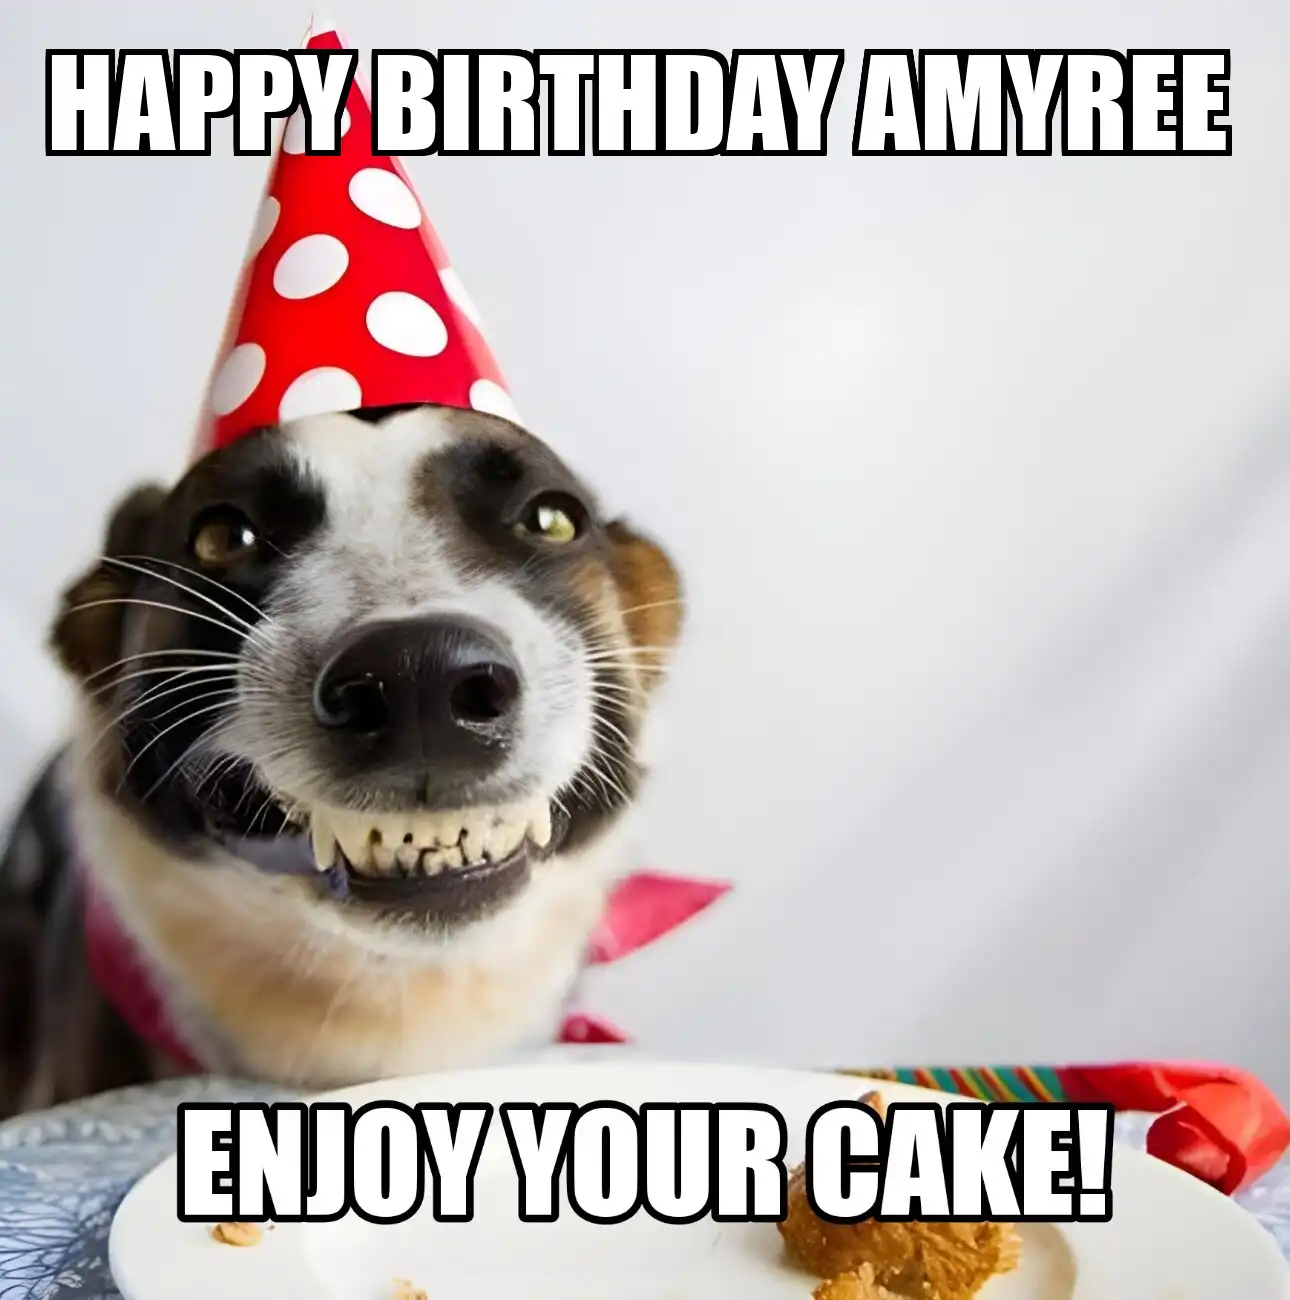 Happy Birthday Amyree Enjoy Your Cake Dog Meme